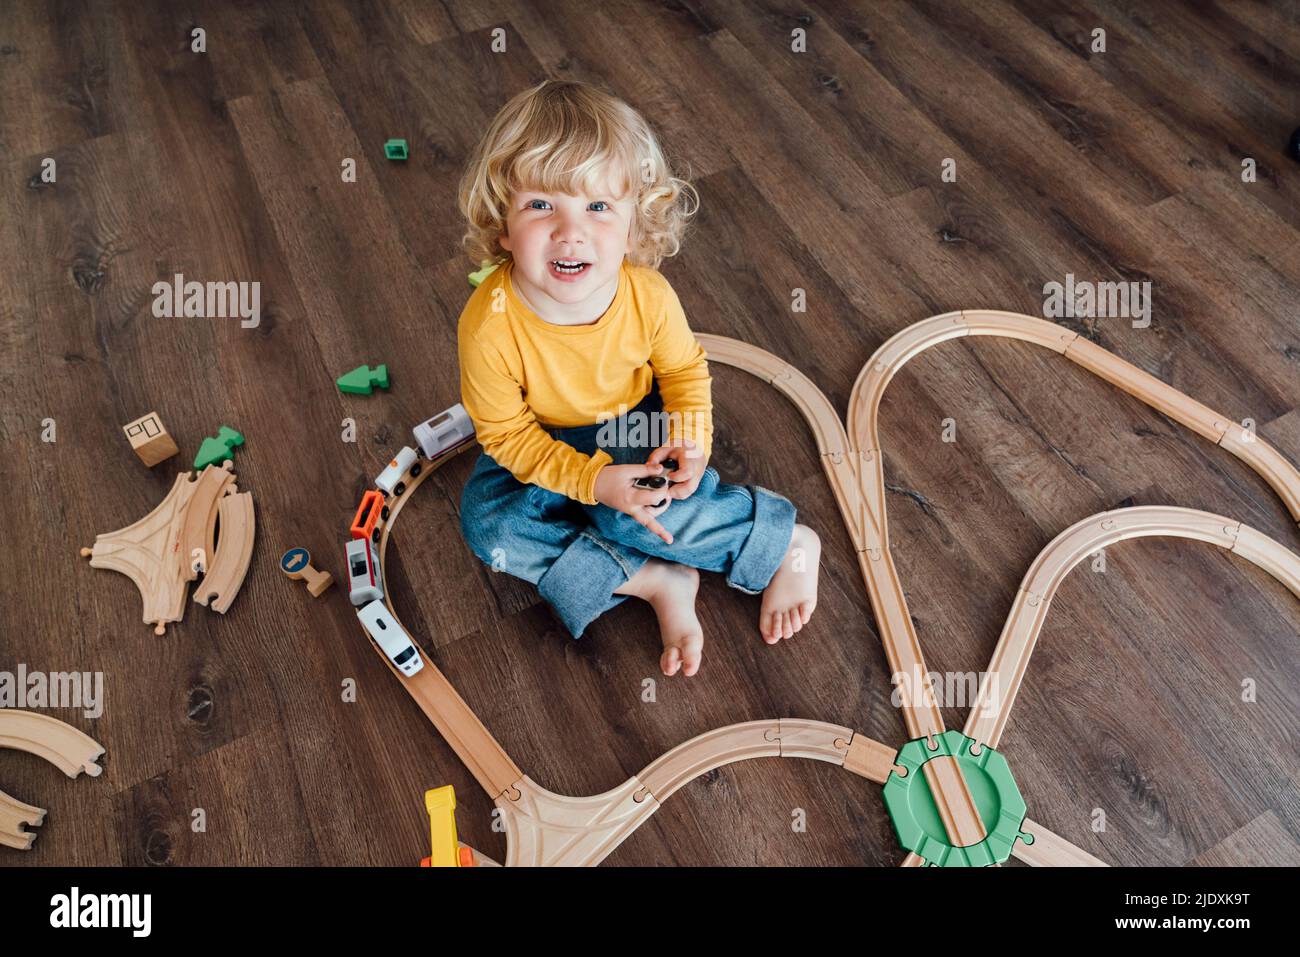 Glücklicher Junge mit blonden Haaren spielt mit Spielzeug Zug gesetzt zu Hause Stockfoto